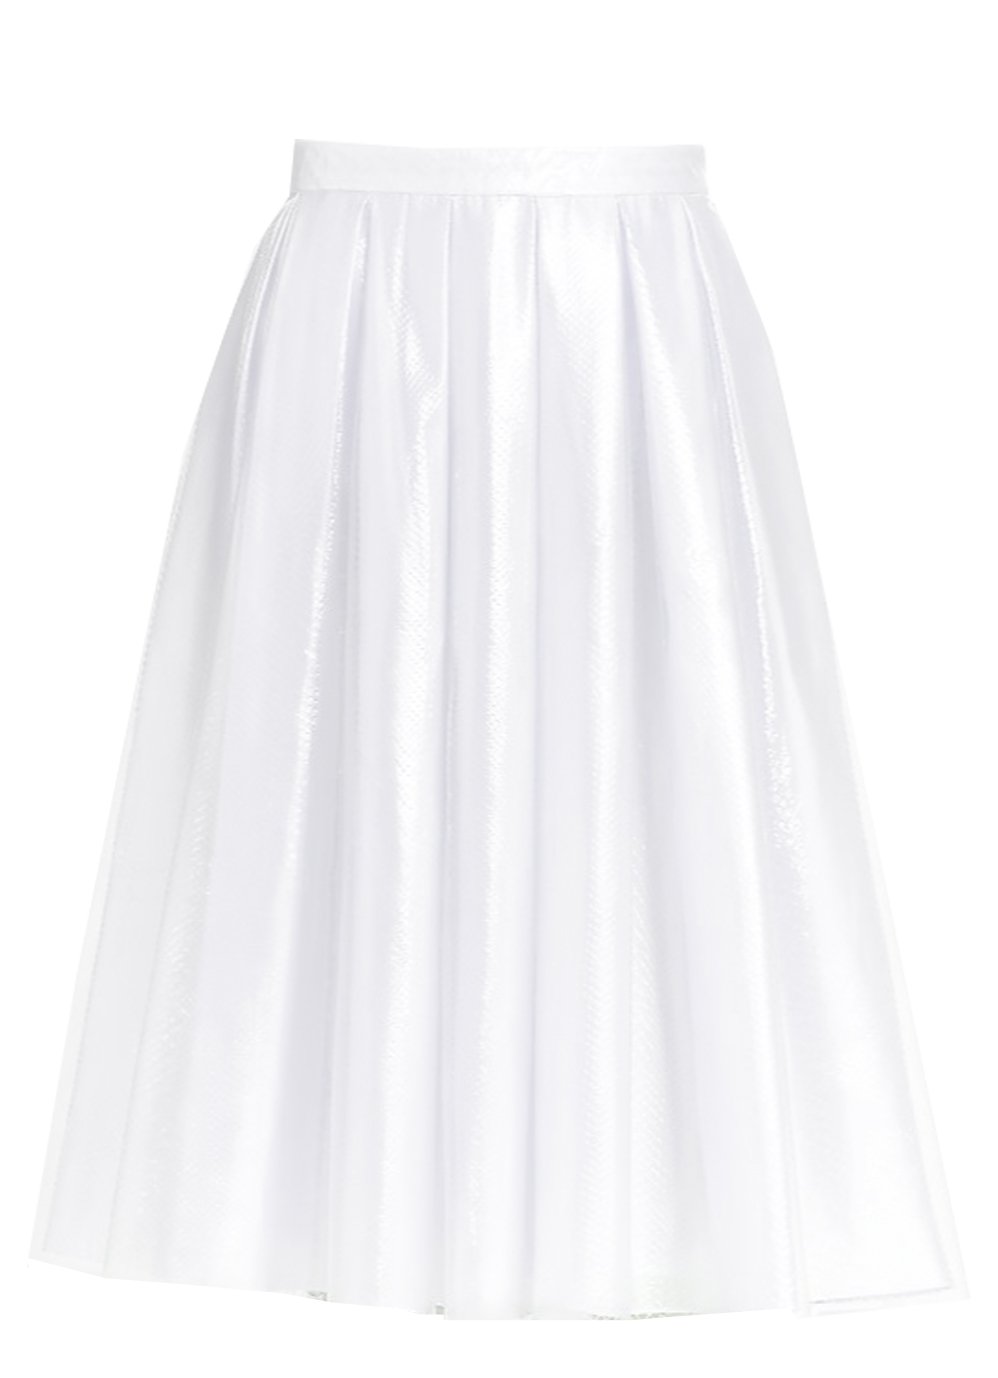 Pleated White Satin Skirt with sheer overlay – Elizabeth's Custom Skirts